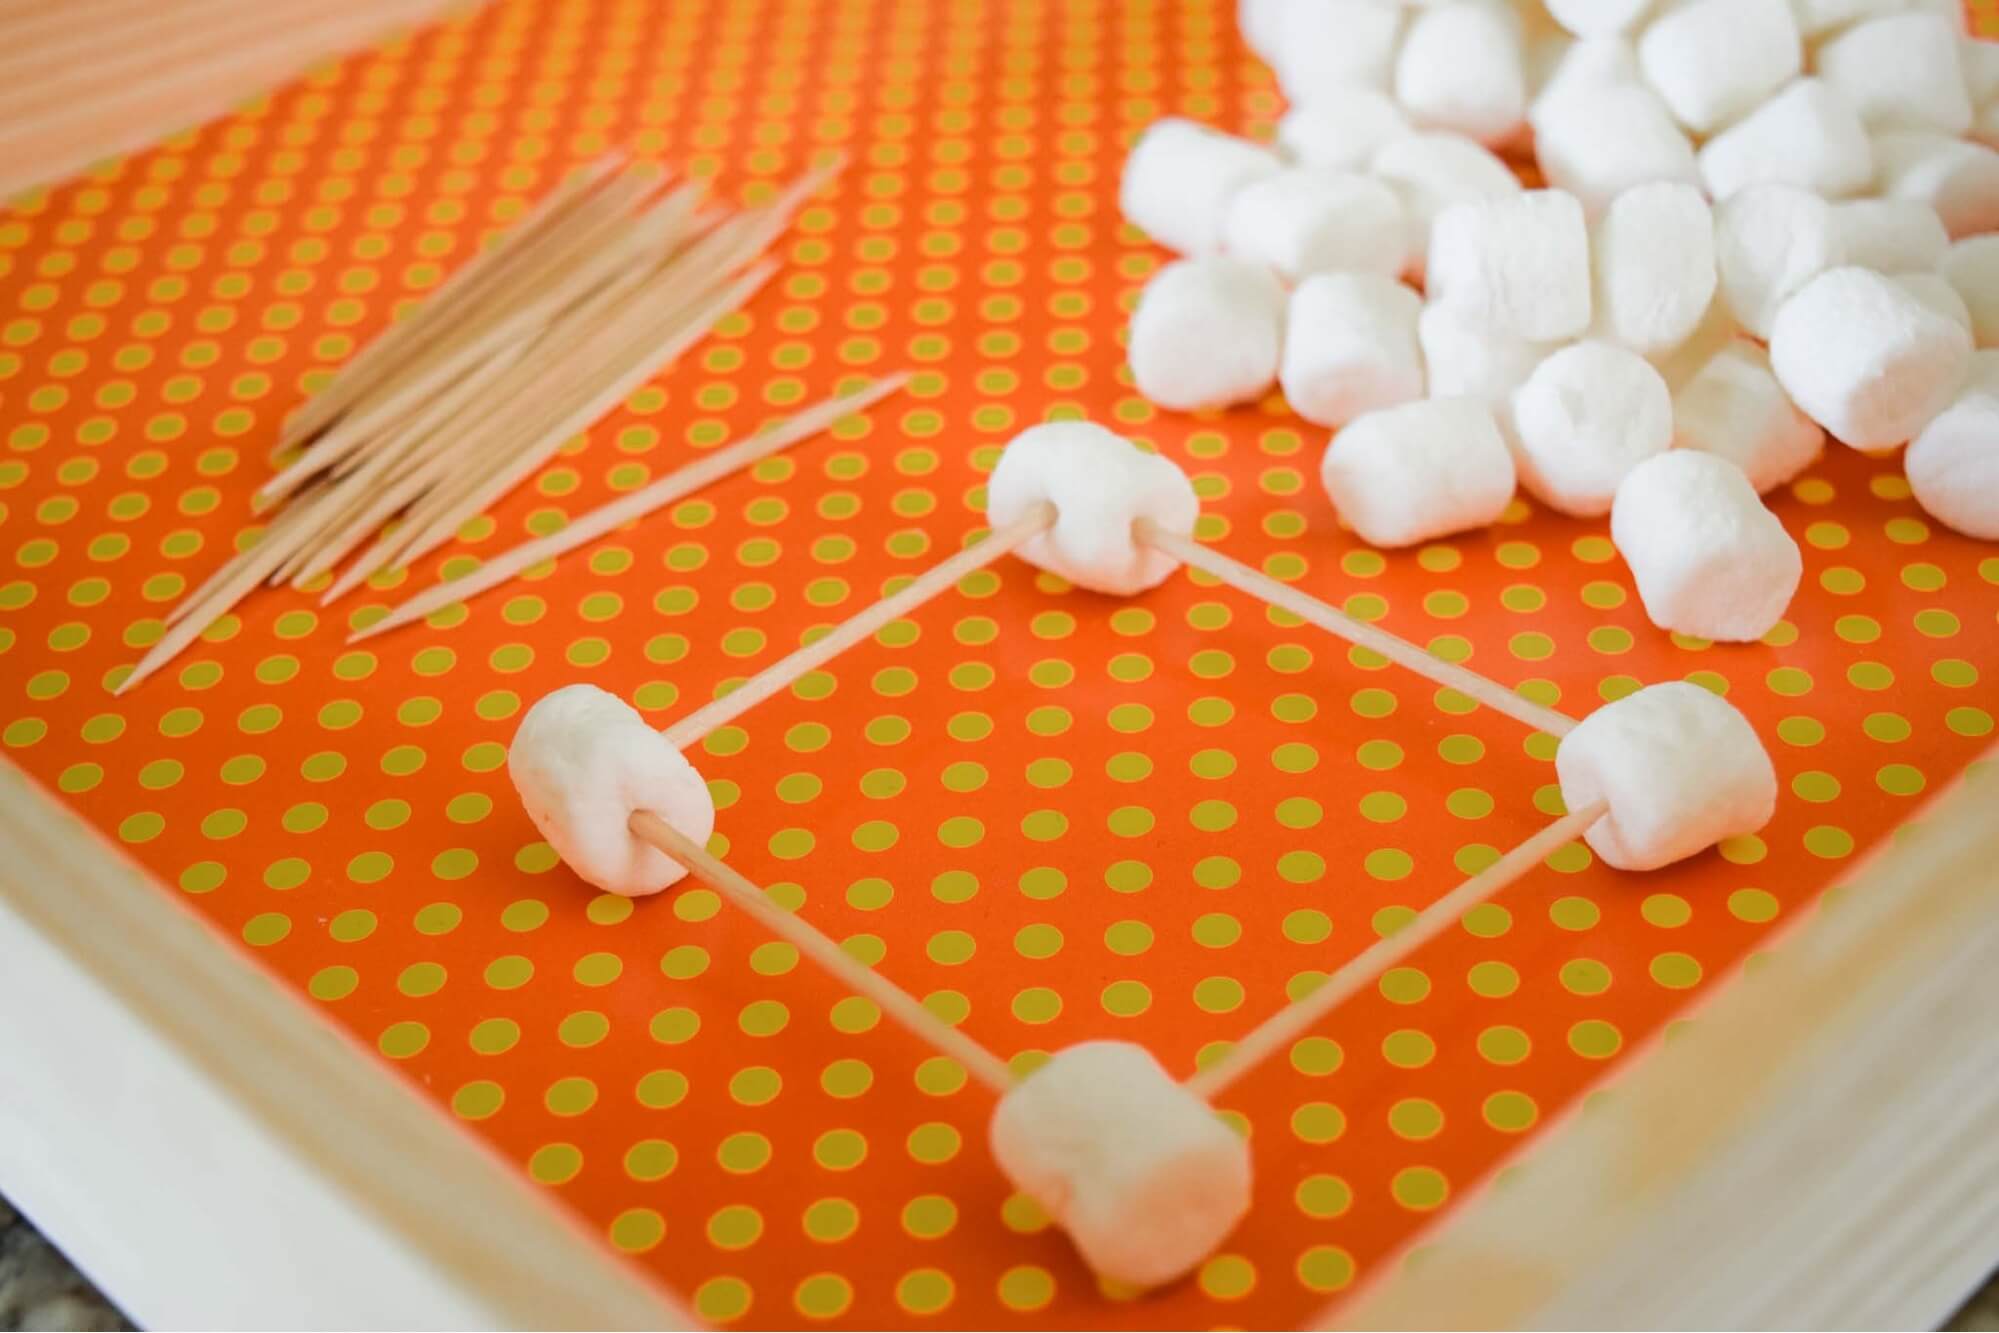 hoạt động STEM cho trẻ mầm non - Xây dựng nhà kẹo dẻo